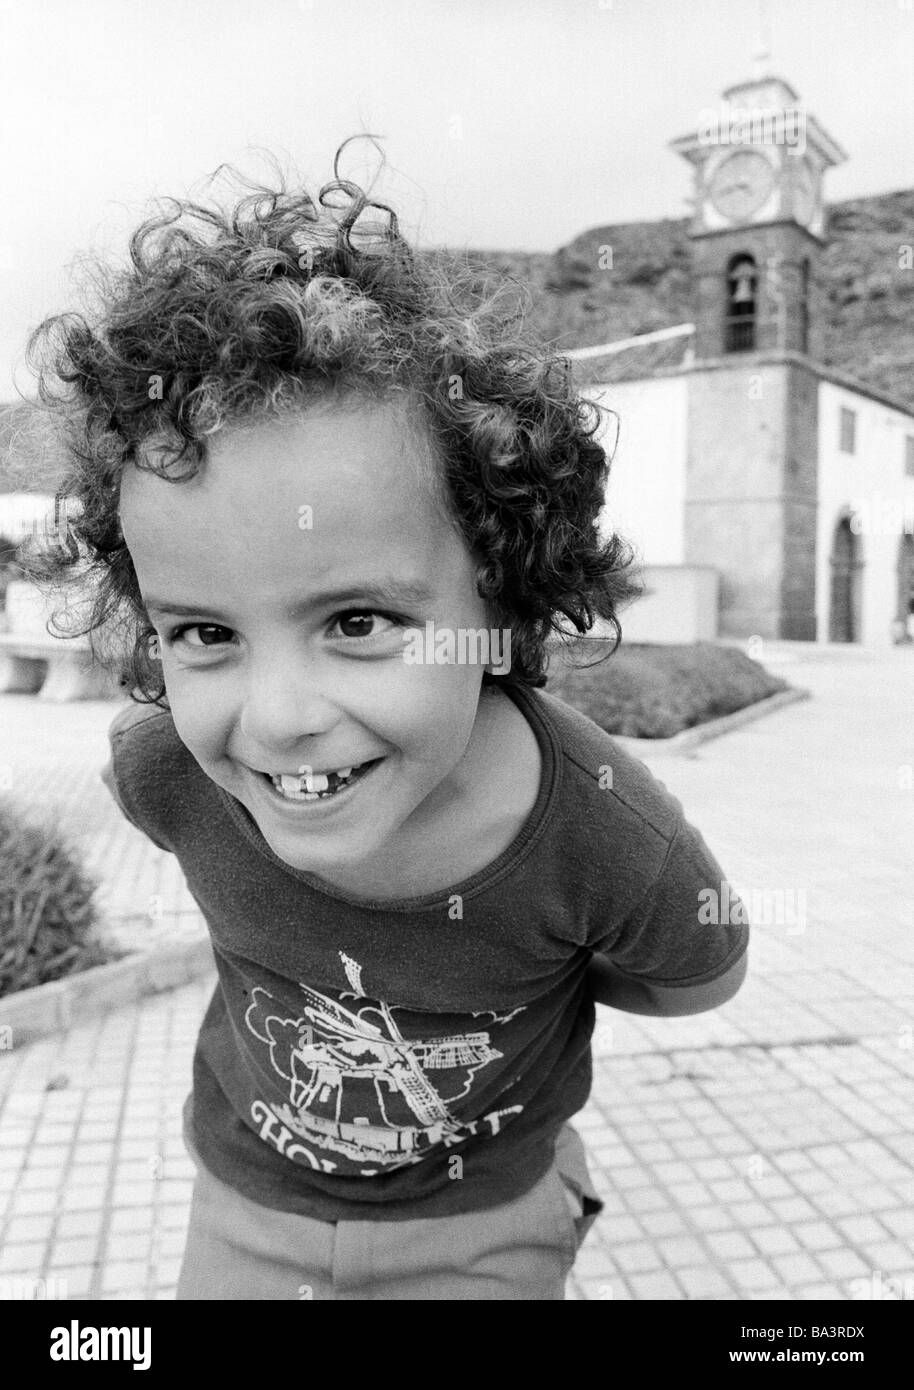 Ottanta, foto in bianco e nero, persone, bambini, Little Boy ride nella fotocamera, ritratto, fishey lente, di età compresa tra i 6 e i 10 anni, Spagna, Canarie, Canarie, Tenerife, San Juan Foto Stock